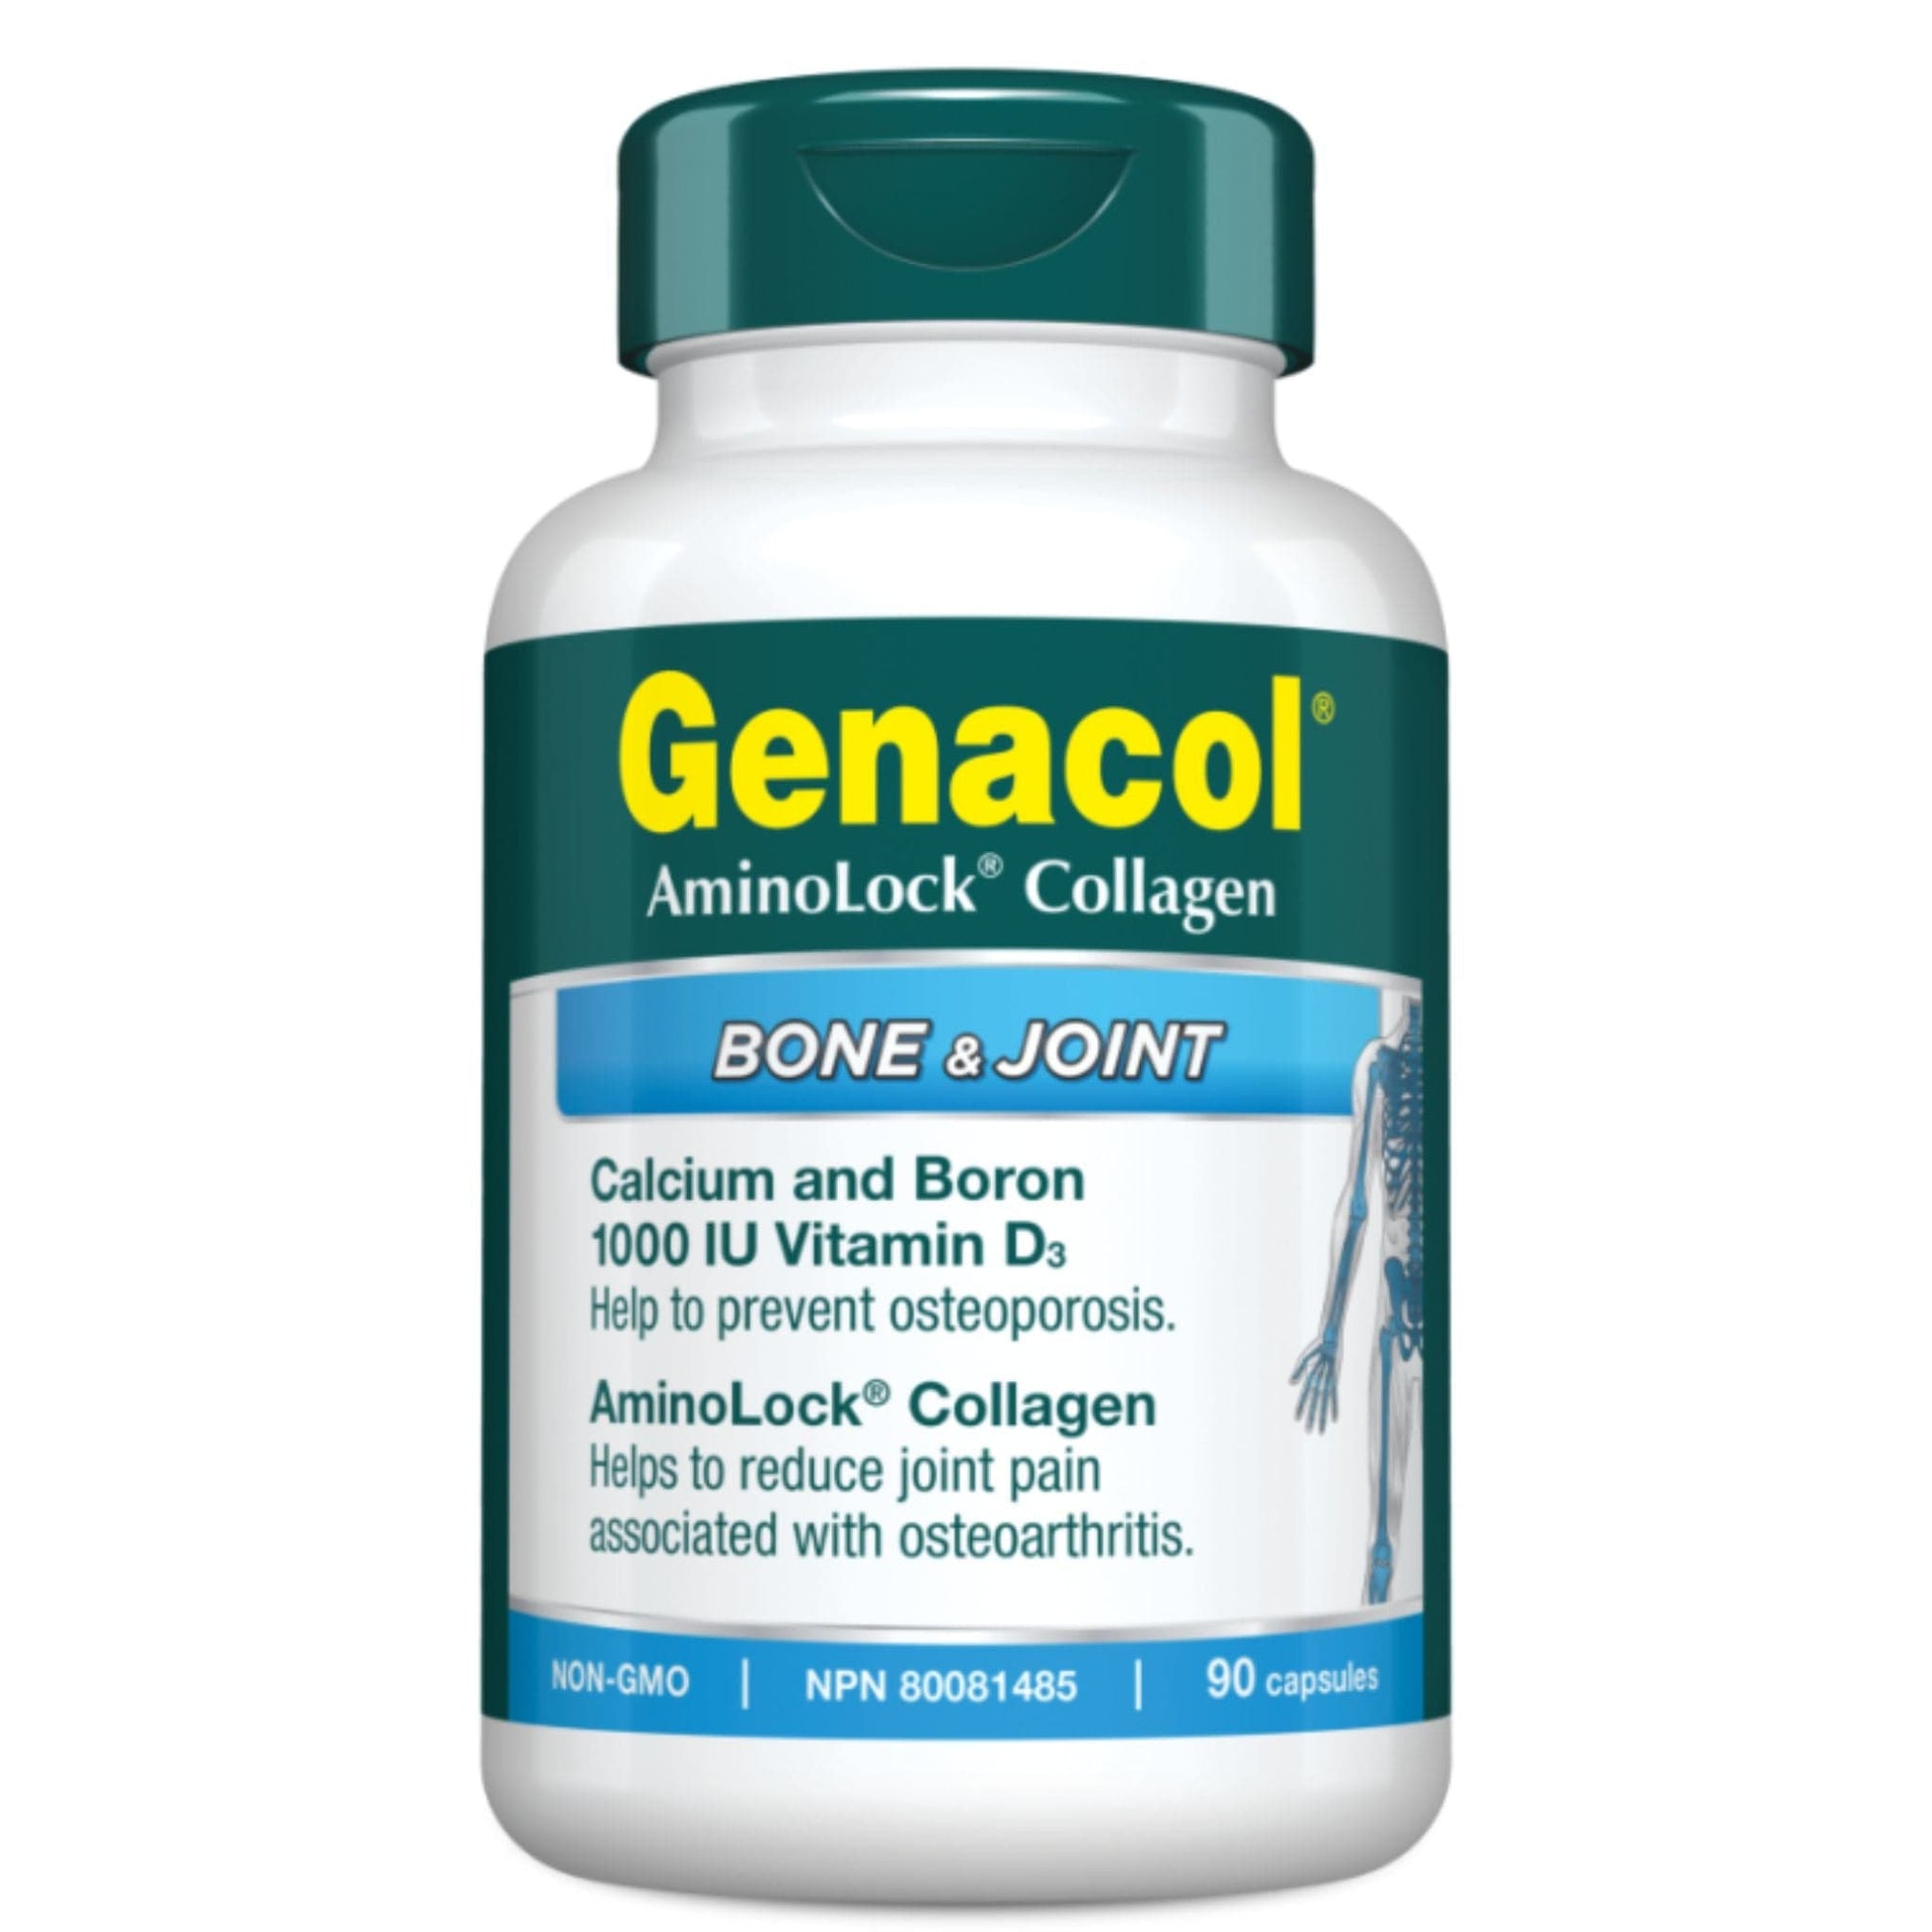 Genacol AminoLock Collagen Bone and Joint